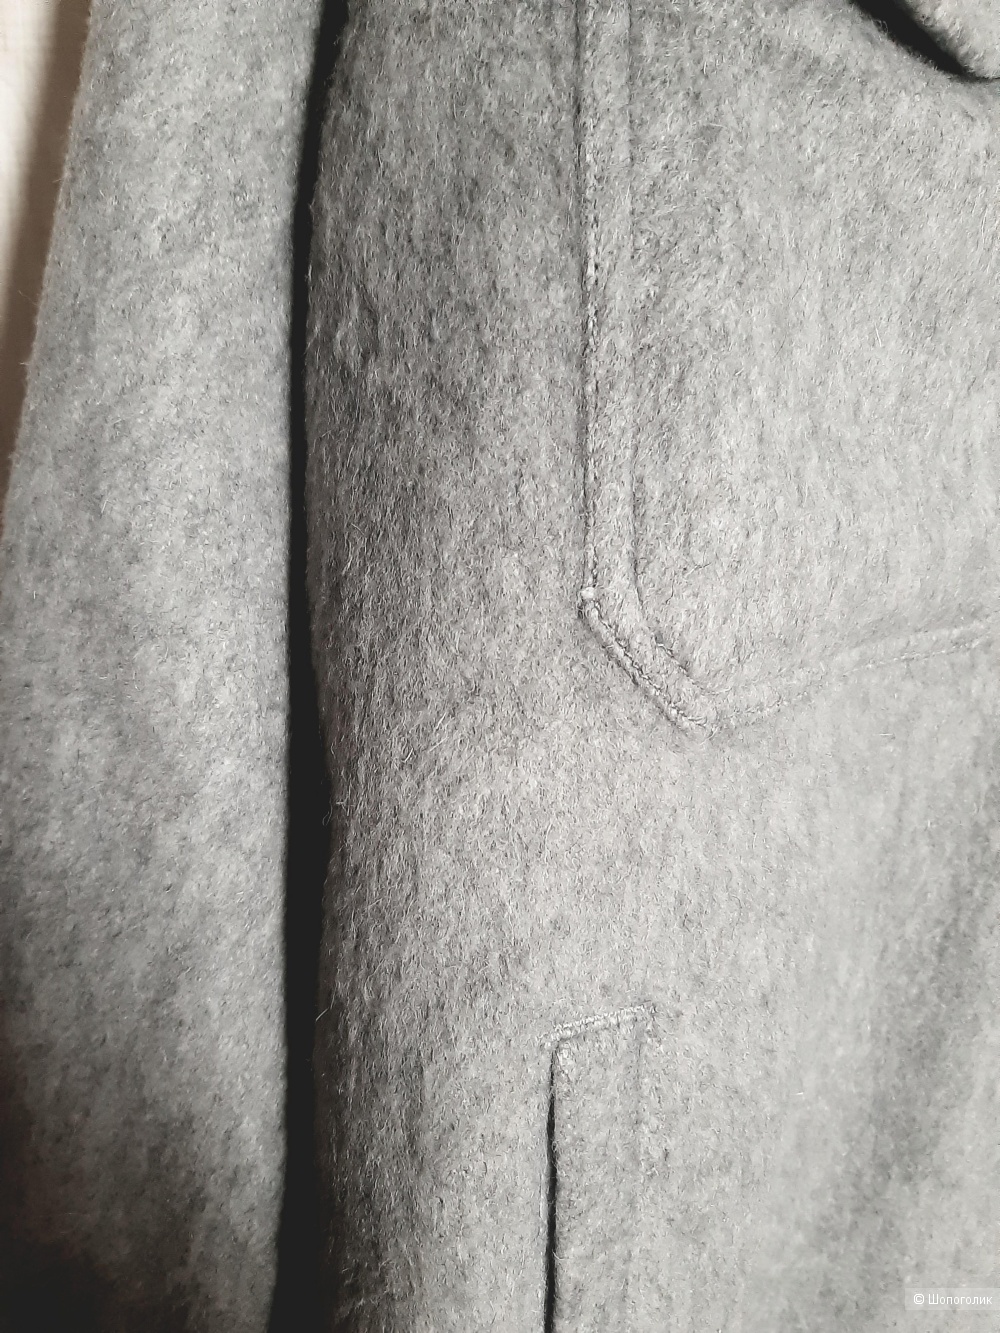 Куртка -рубашка Zara, размер L